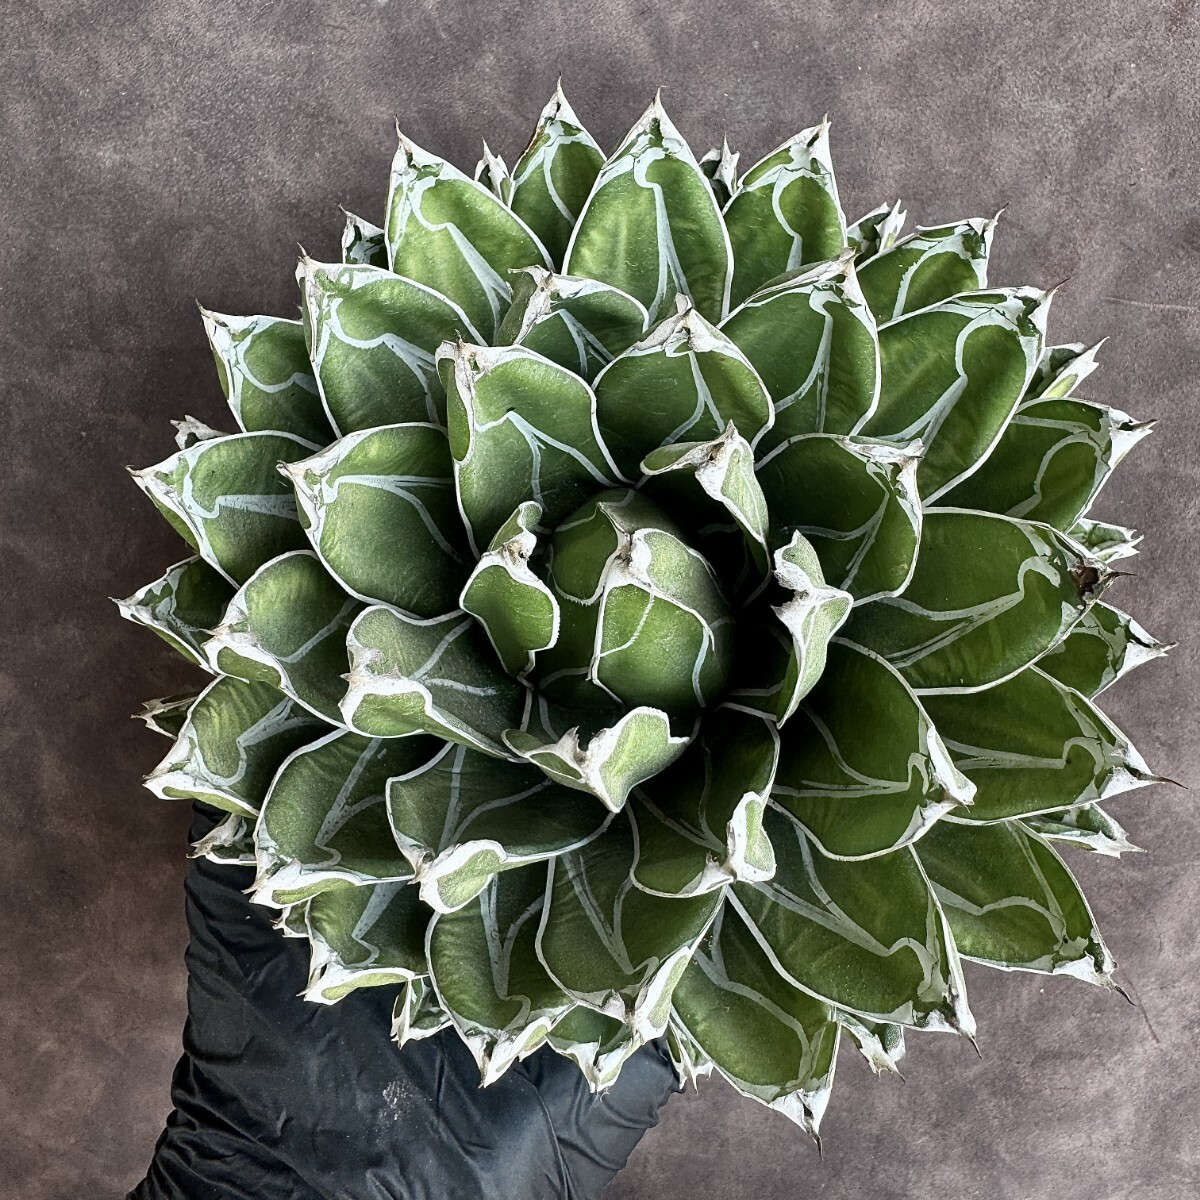 【Lj_plants】H06 多肉植物 アガベ 笹の雪 包葉 球形 超大株 美株の画像1